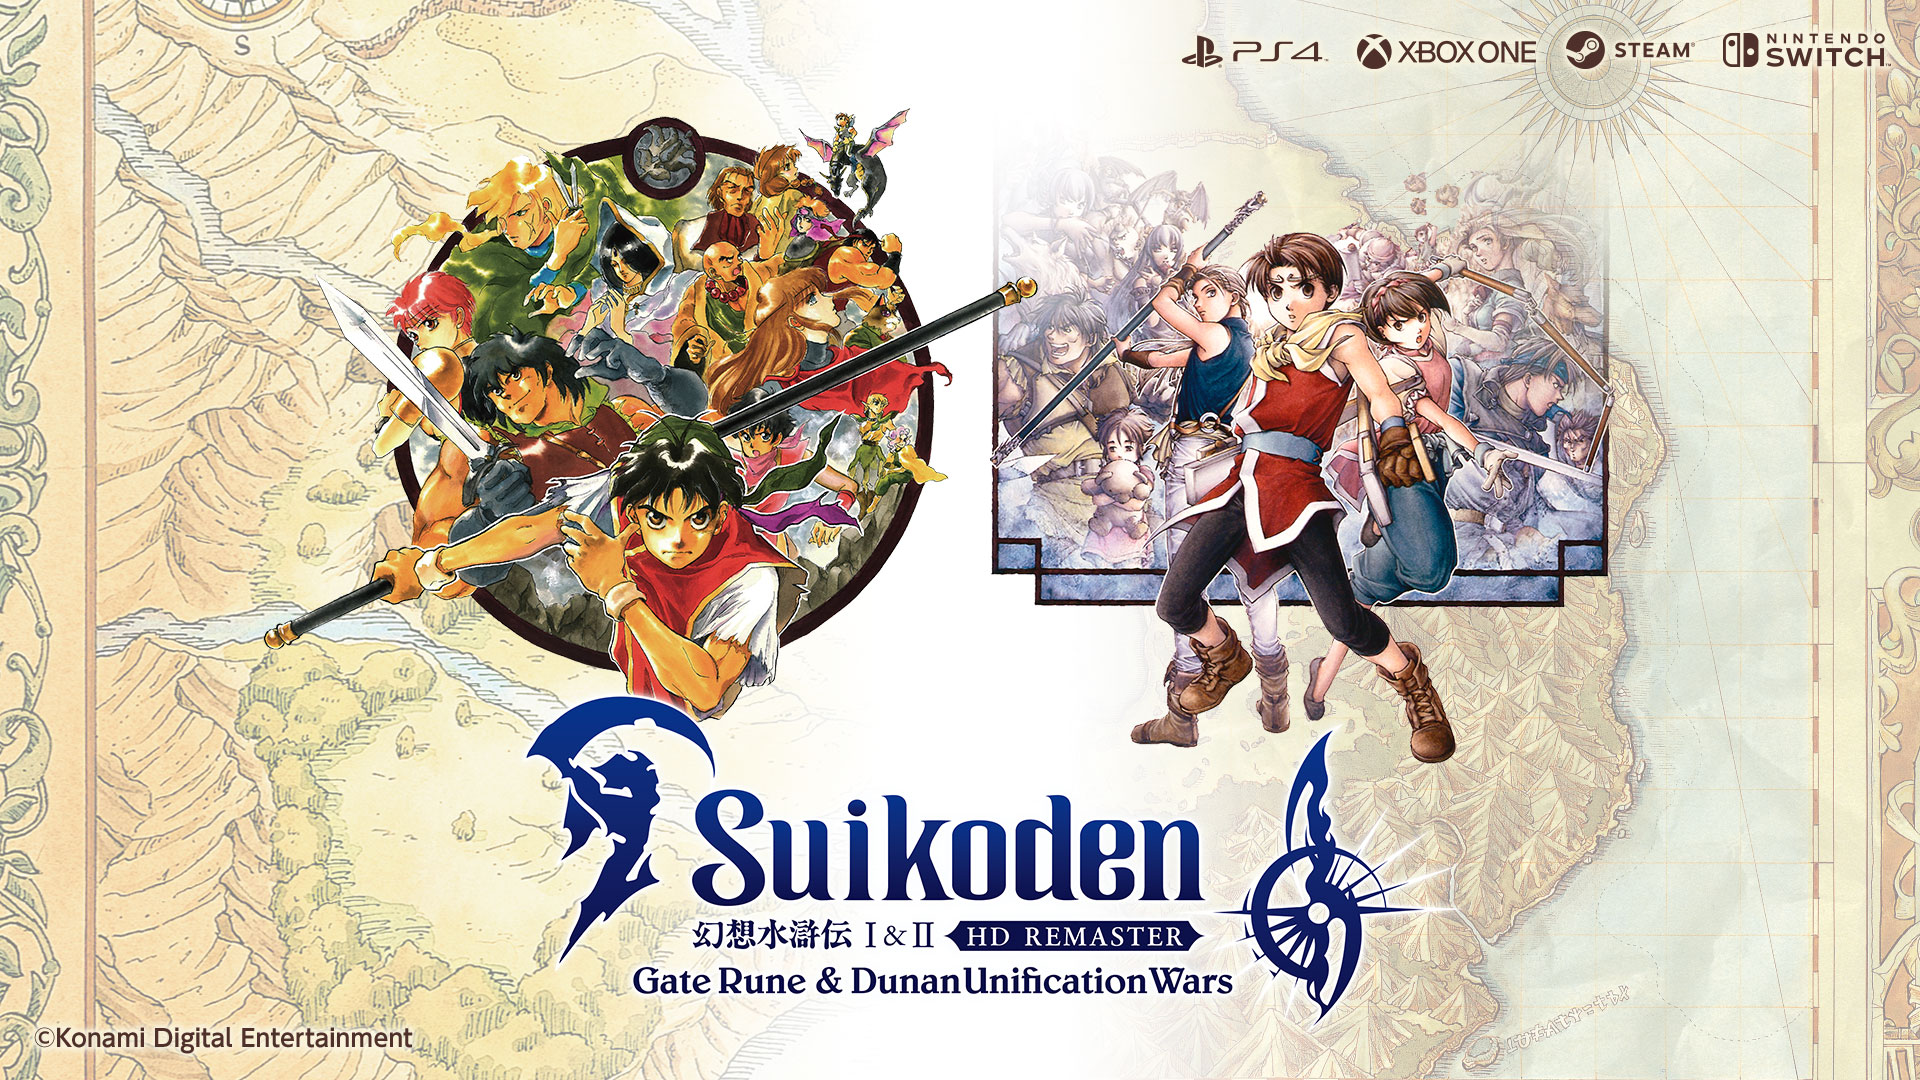 Remaster der Suikoden-Spiele angekündigt Titel